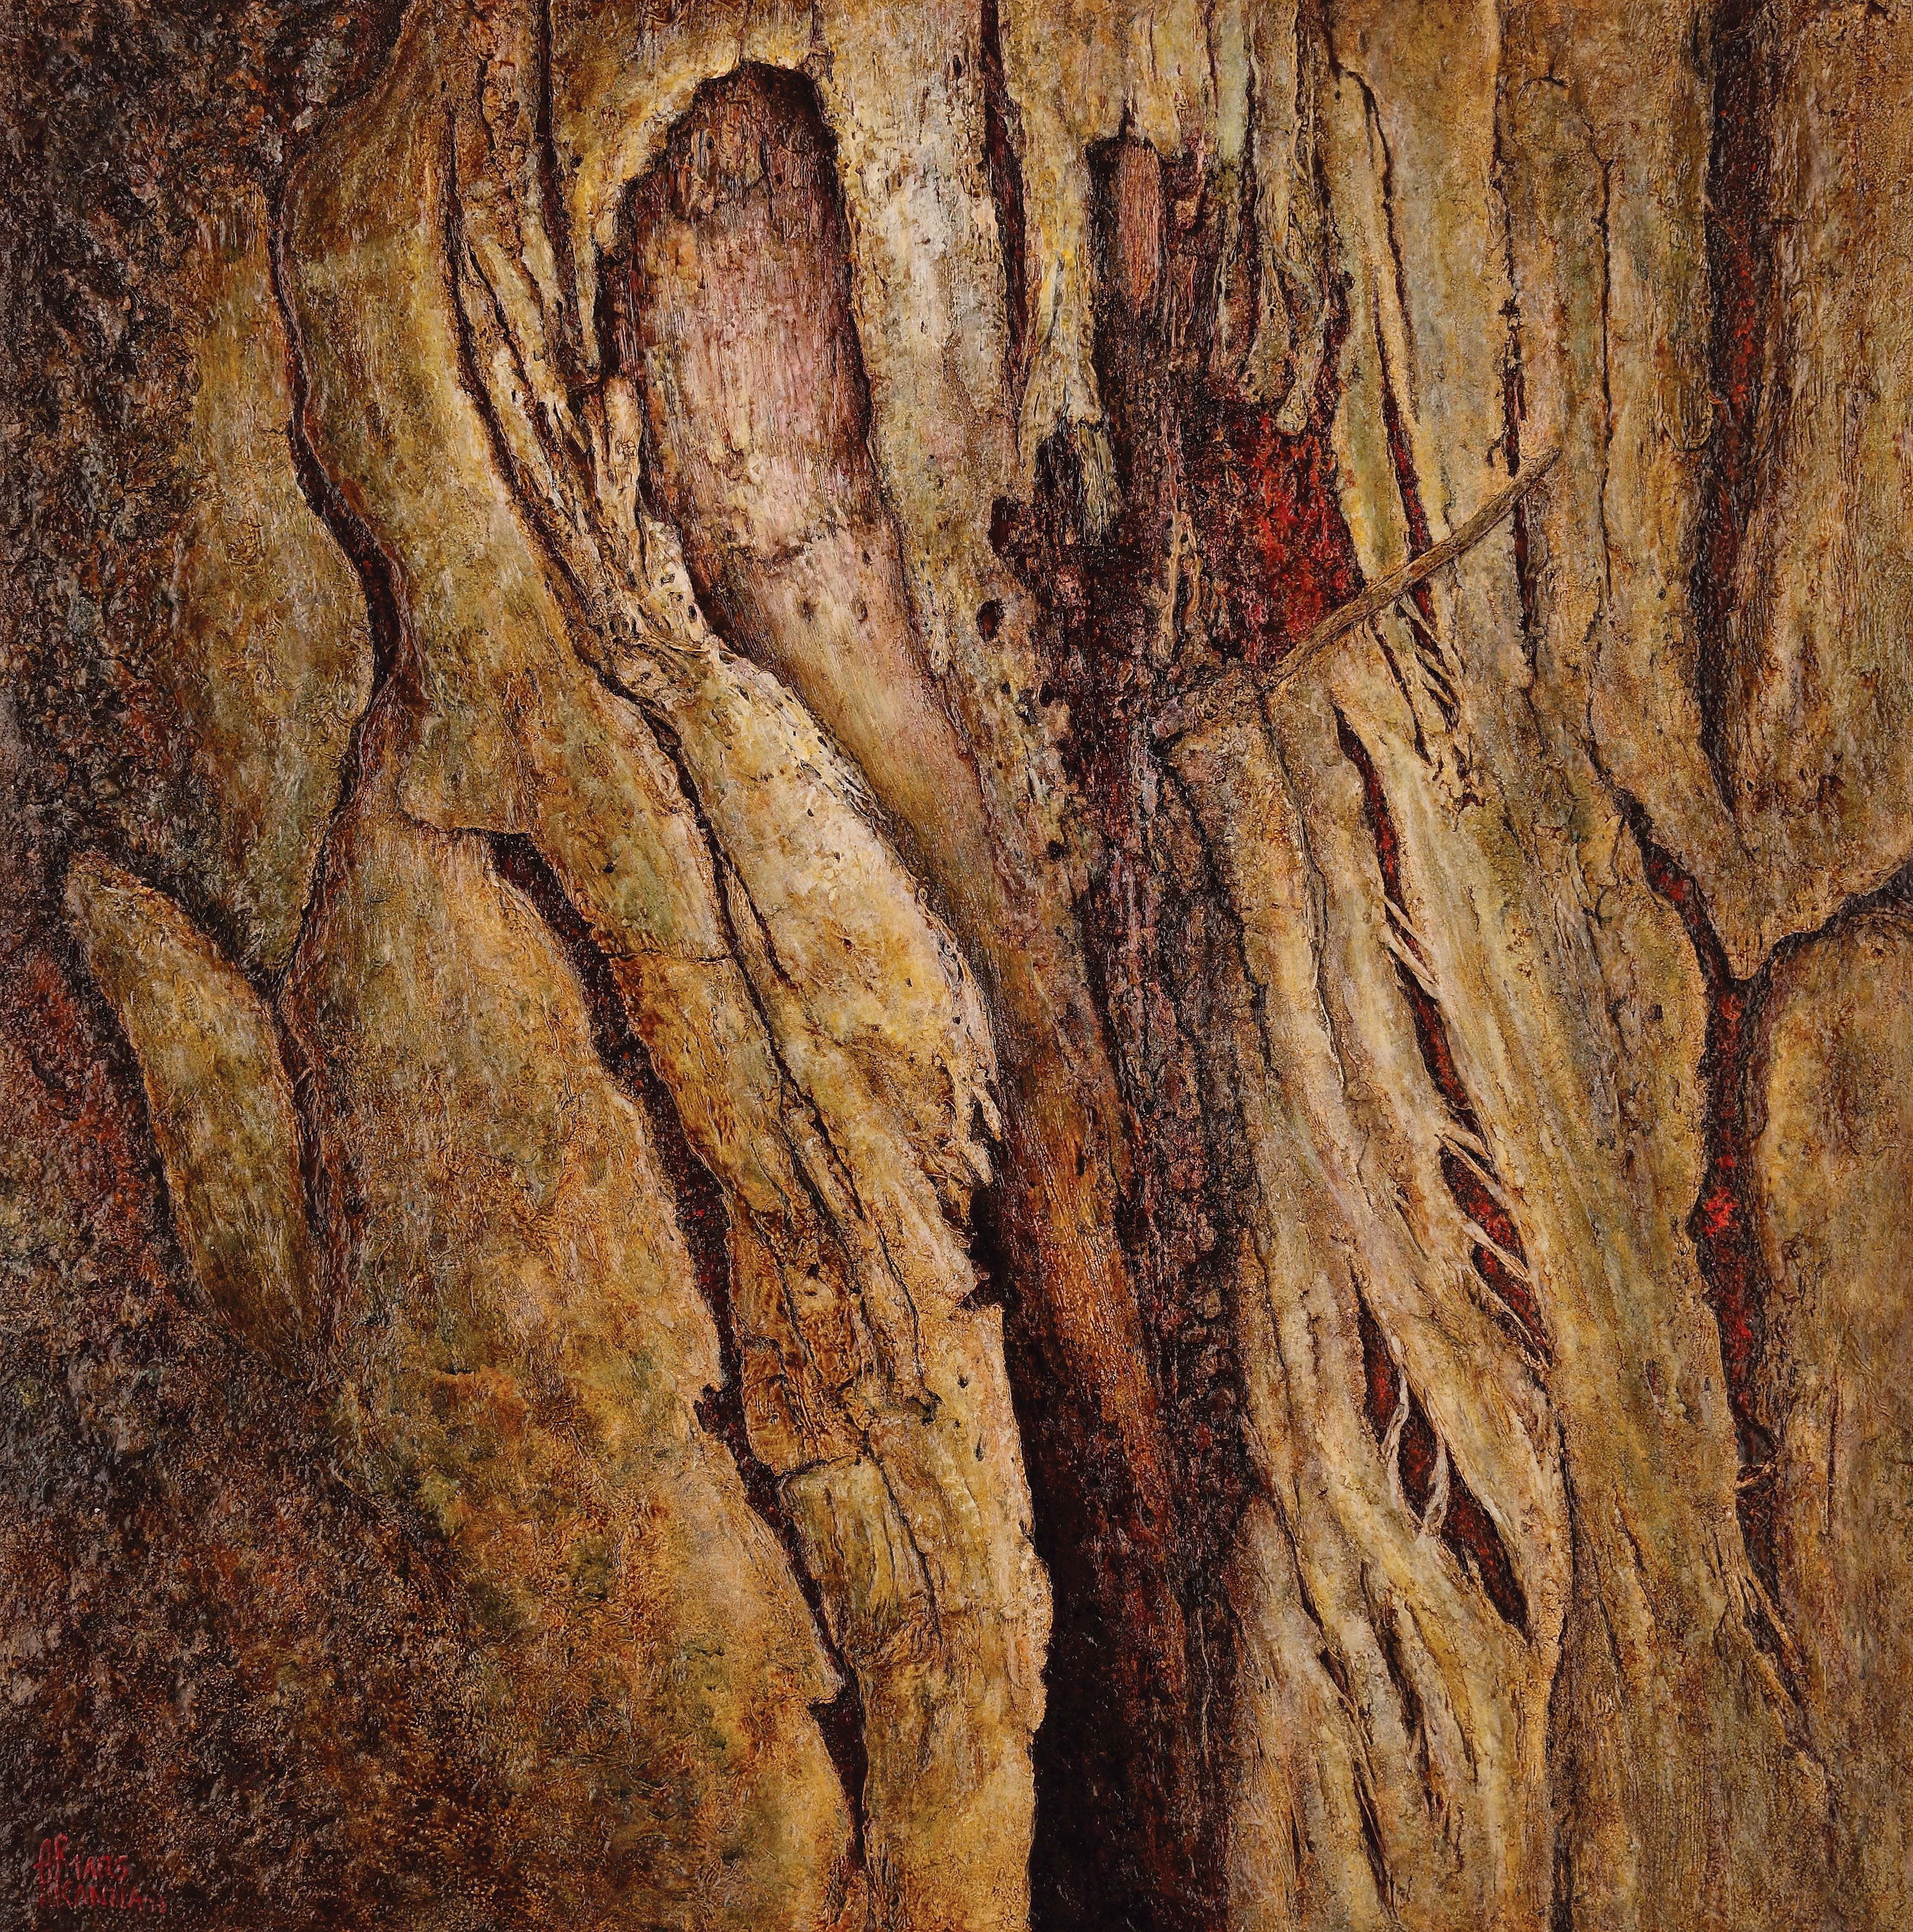 Tree Diary 1|A.P. Marskanna- Mixed Media on Canvas, 2013, 36 x 36 inches